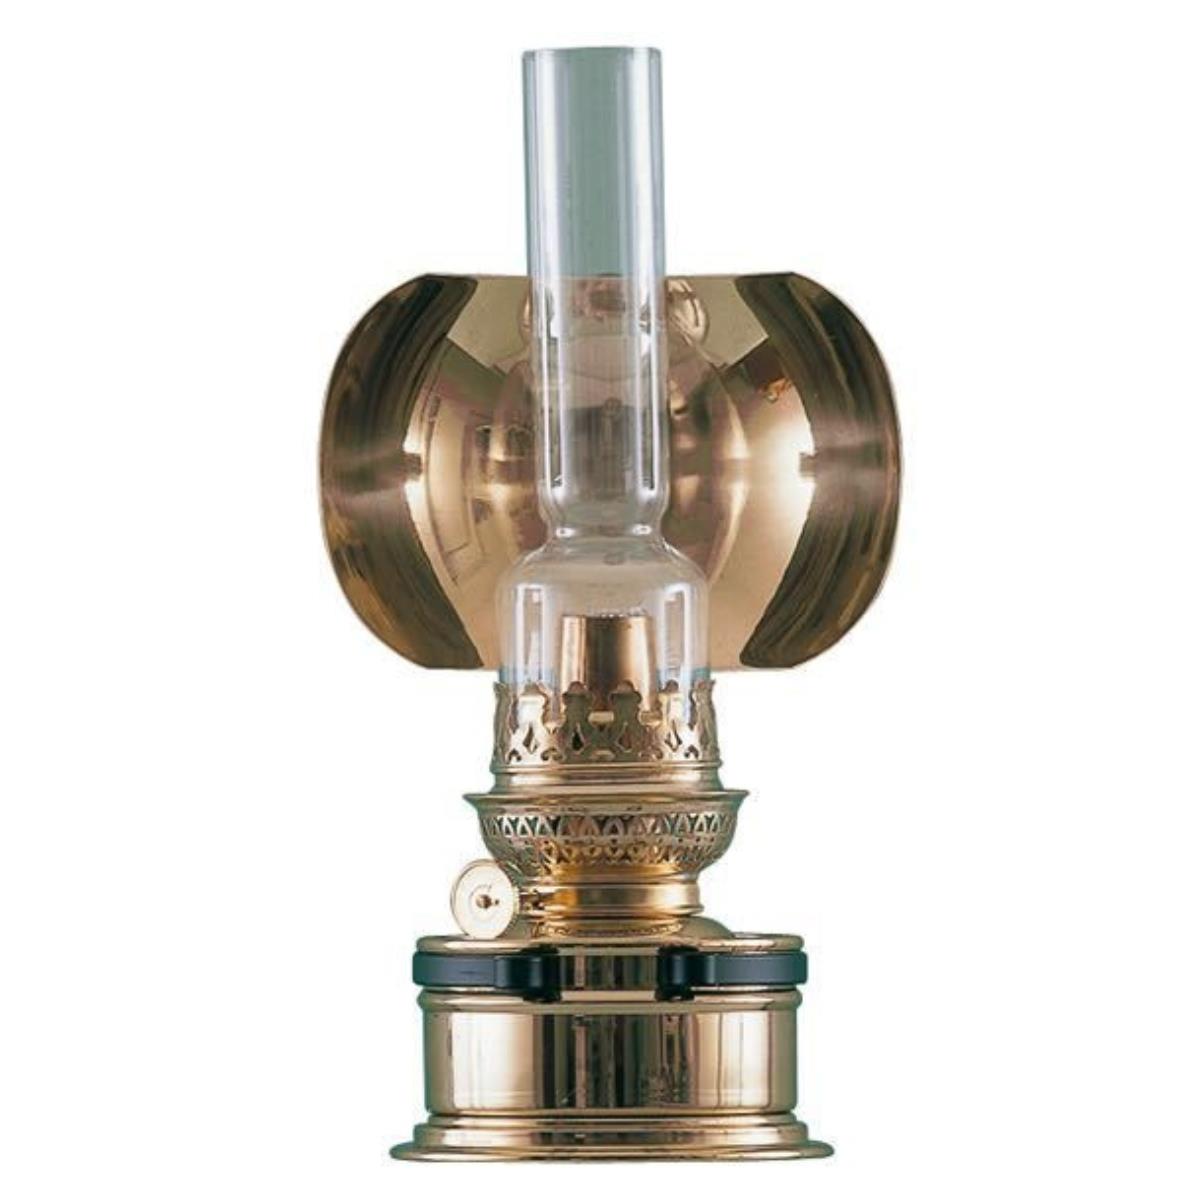 DHR Petroleumlampe "Pantry" aus Messing, 260x144mm